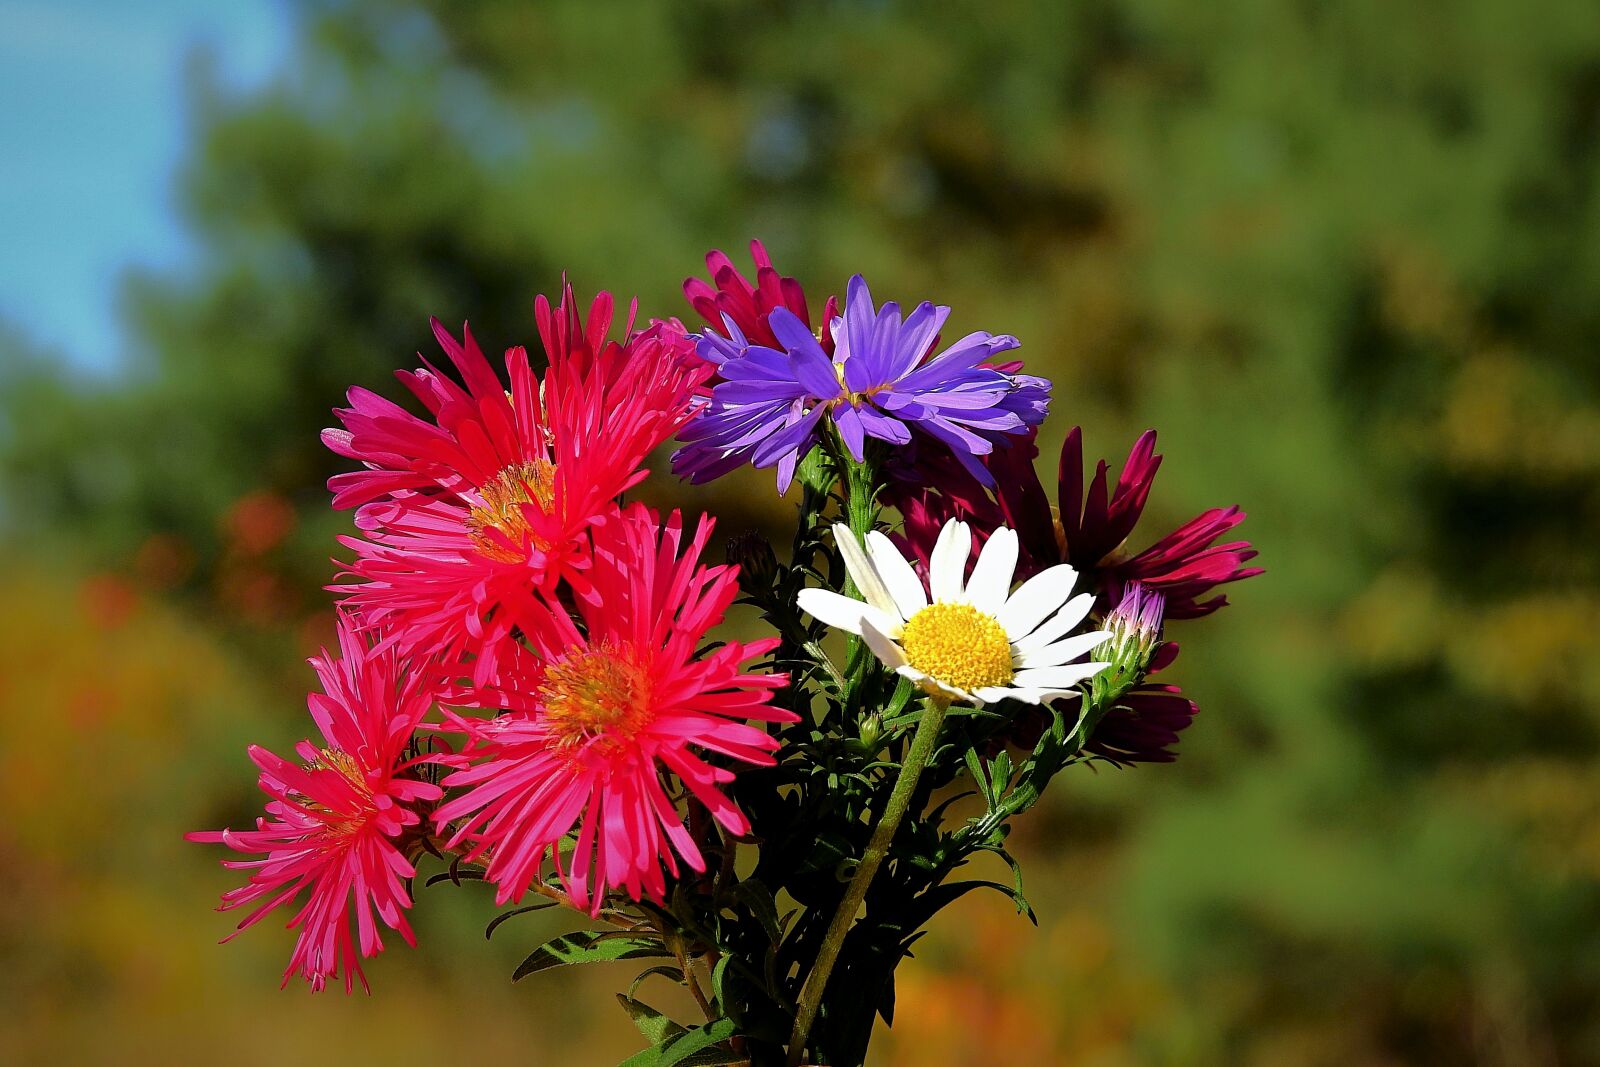 Nikon Coolpix P900 sample photo. Bouquet, flowers, colorful photography